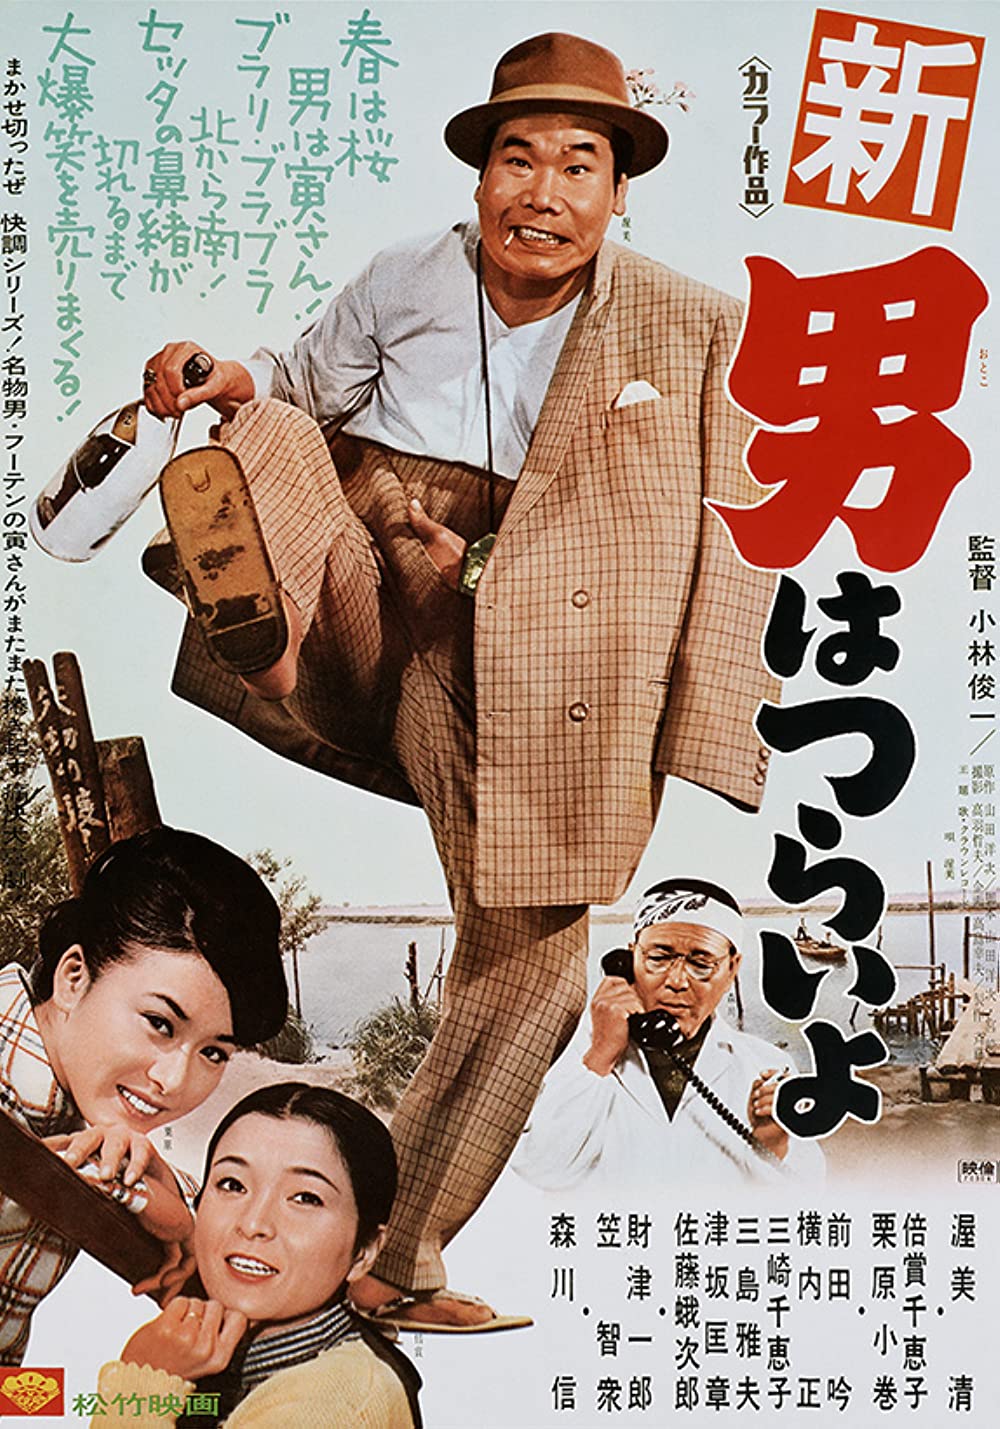 دانلود فیلم Shin otoko wa tsurai yo 1970